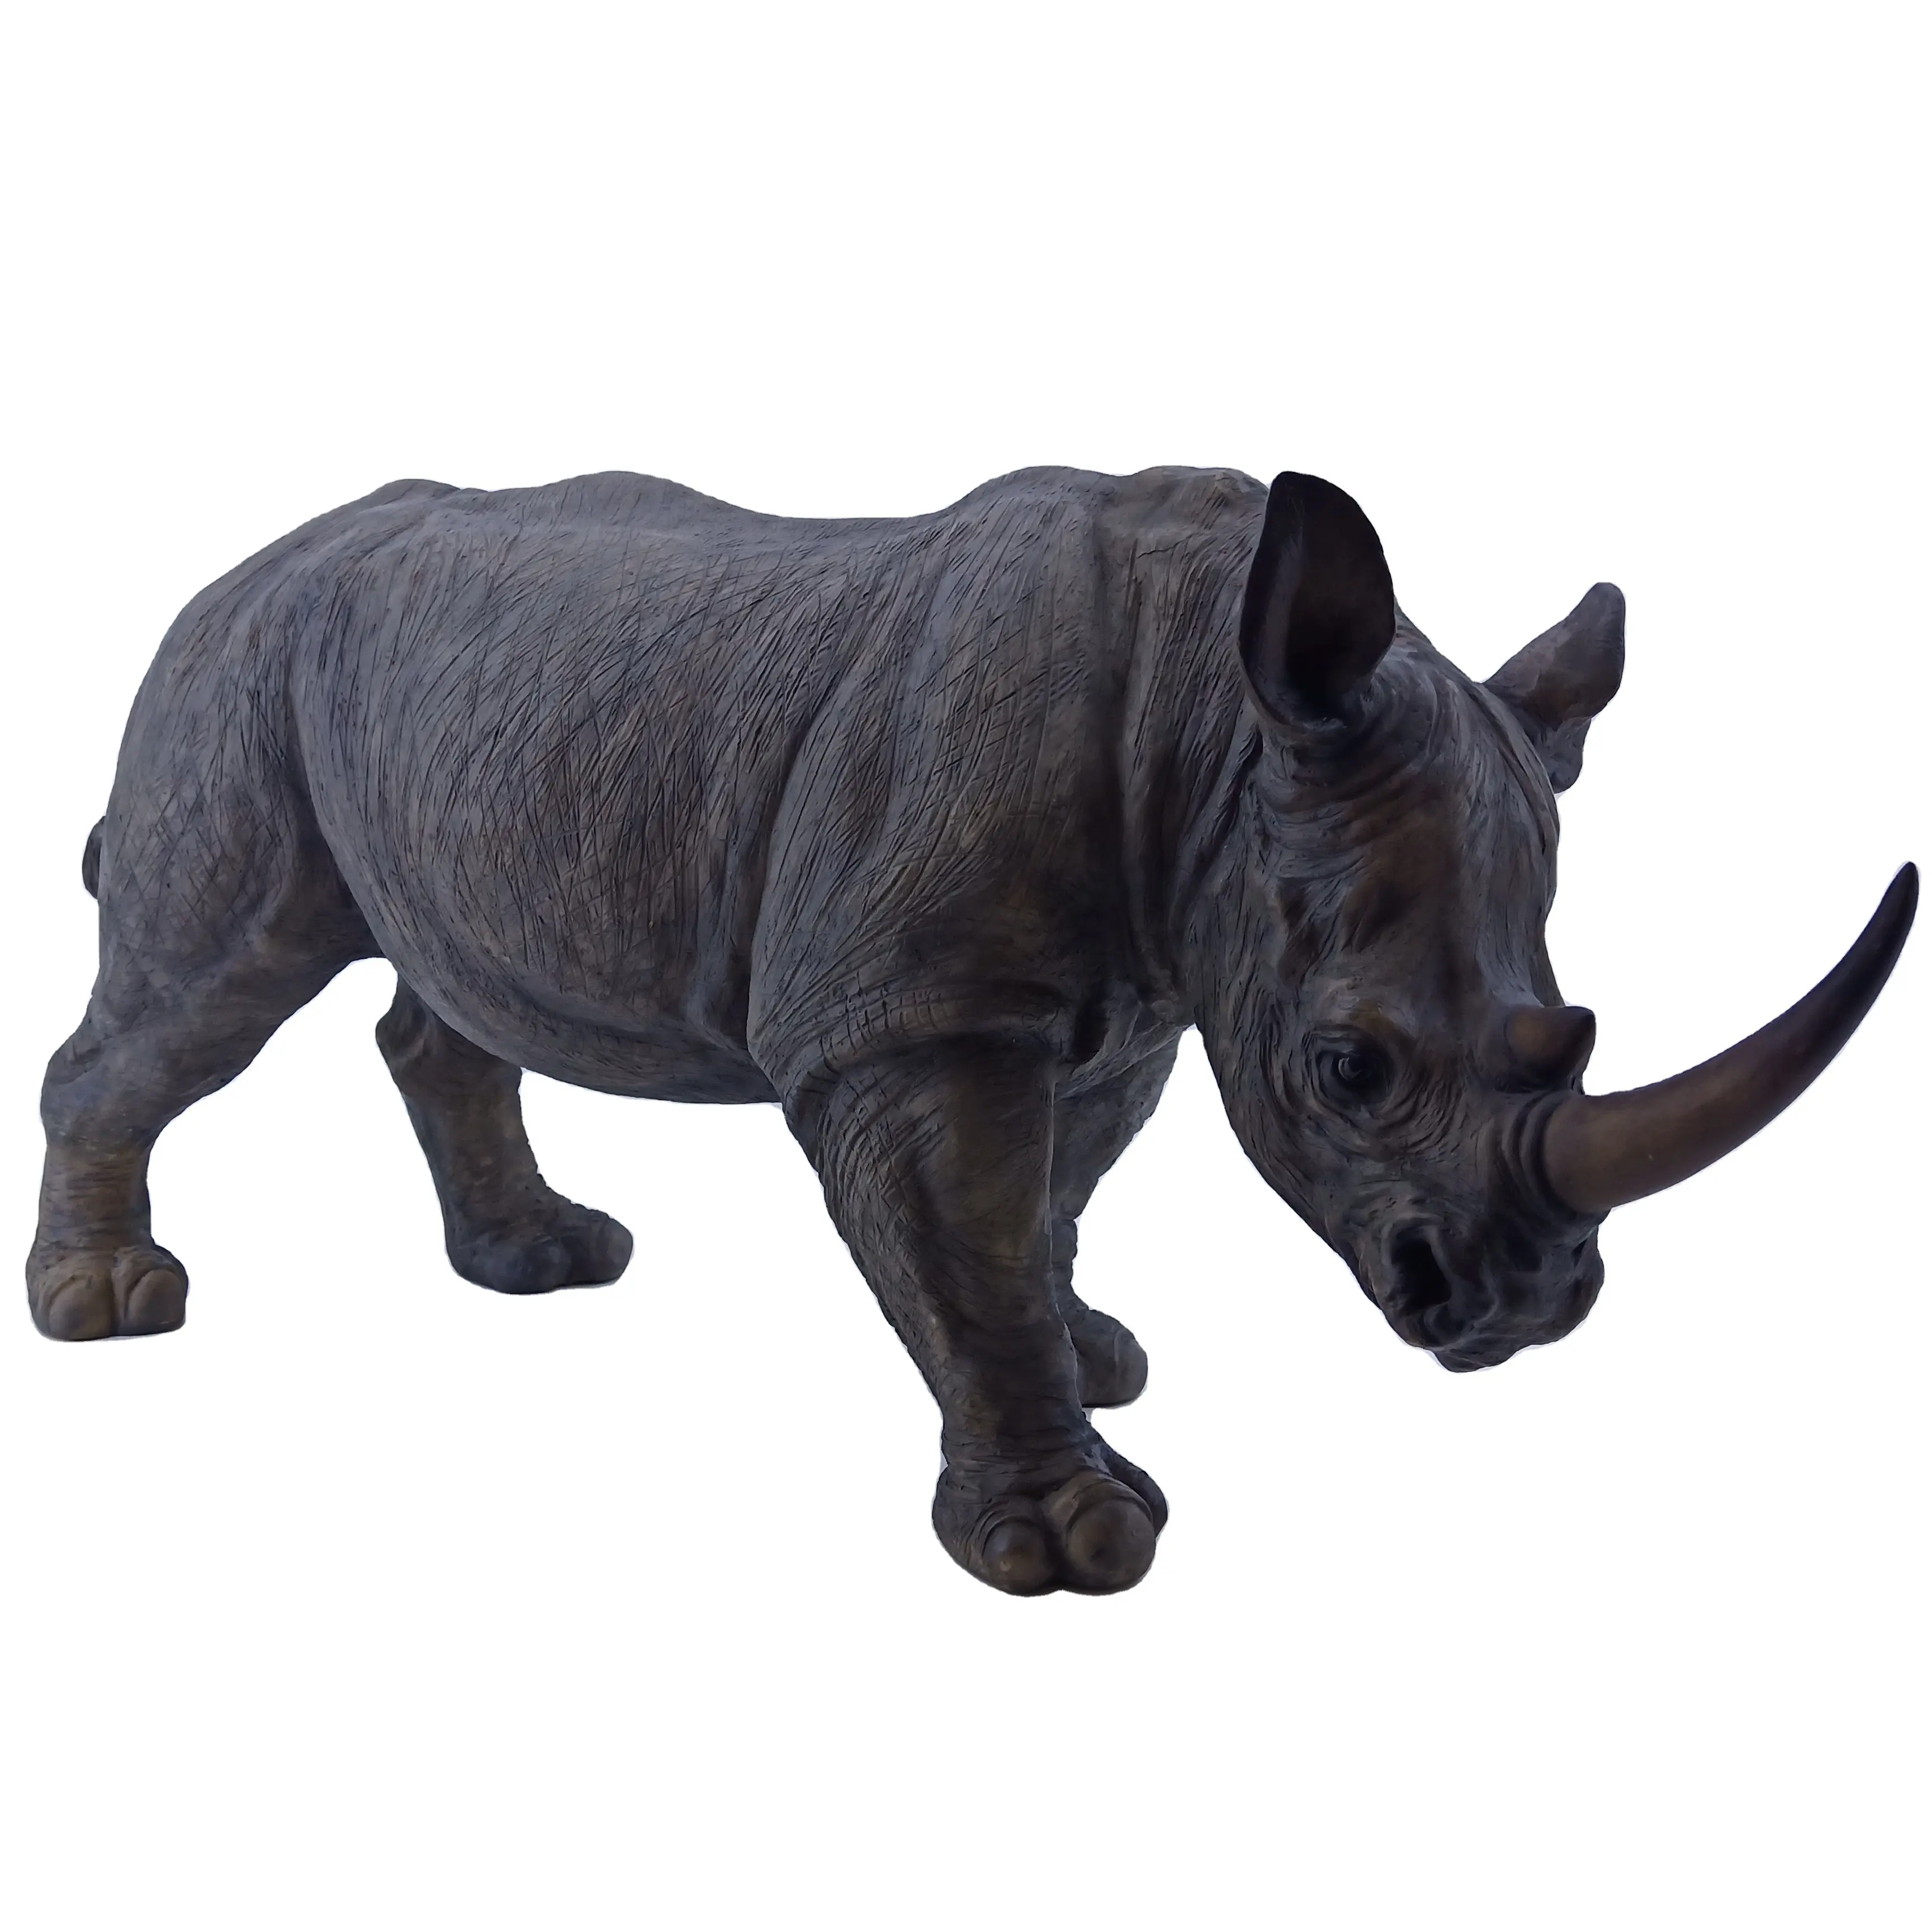 Оптовая продажа, декоративная полирезиновая статуэтка ручной росписи диких животных, стоячие садовые статуэтки носорогов